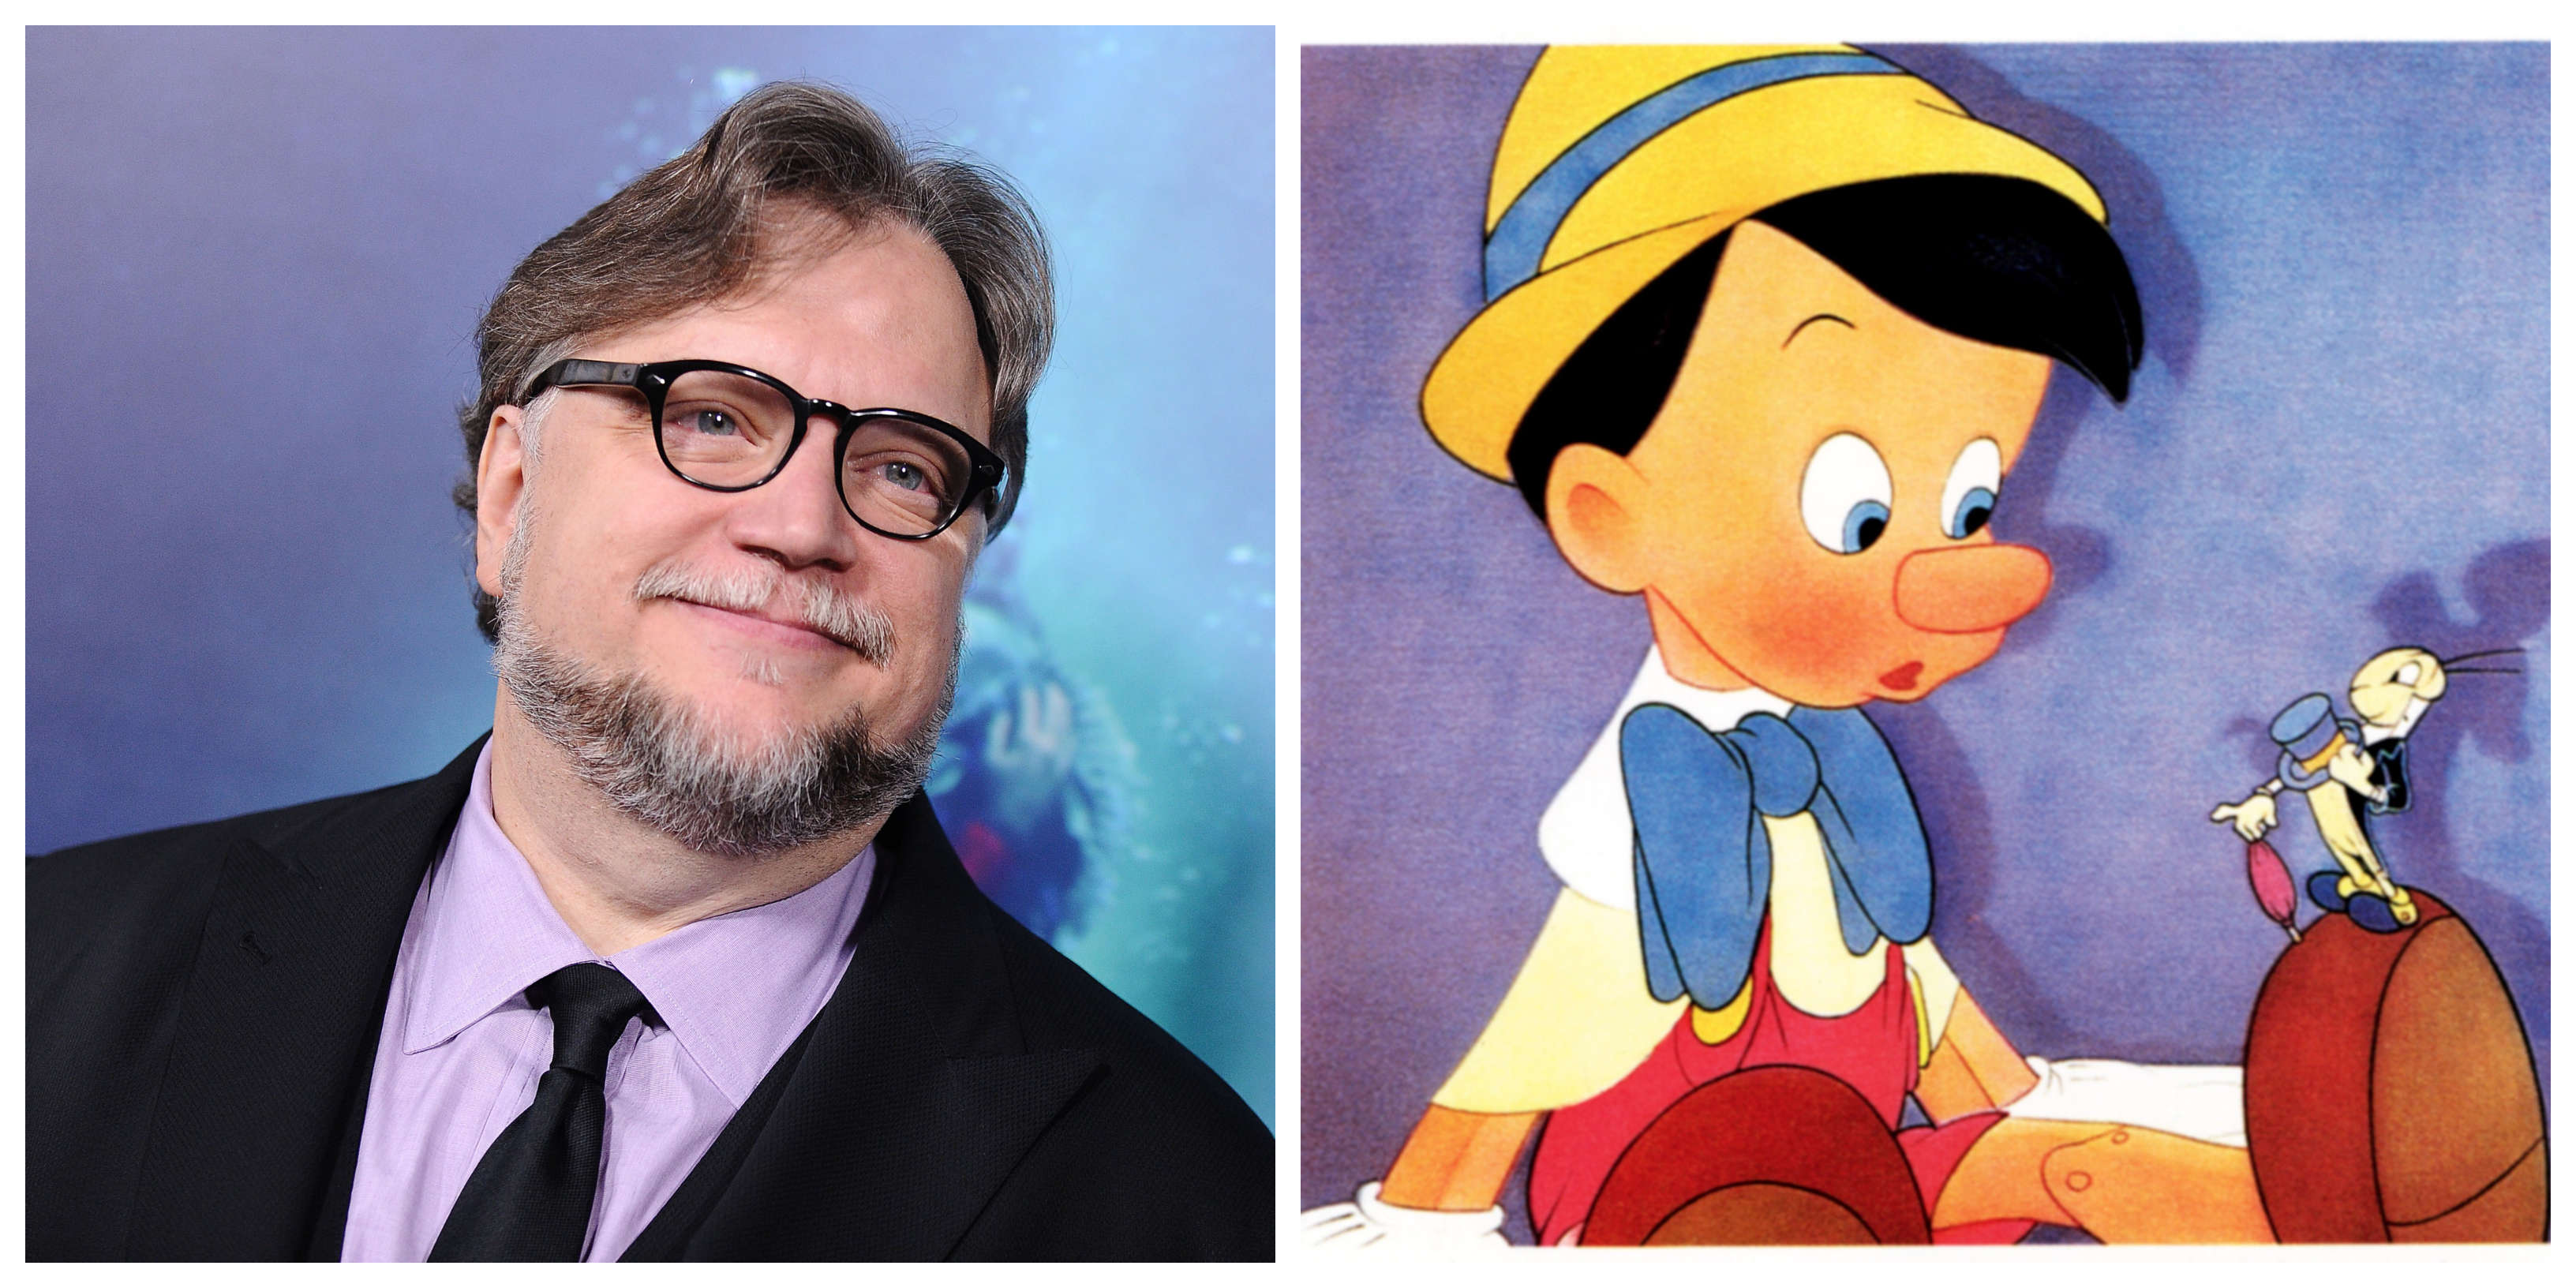 Guillermo del Toro & Pinocchio